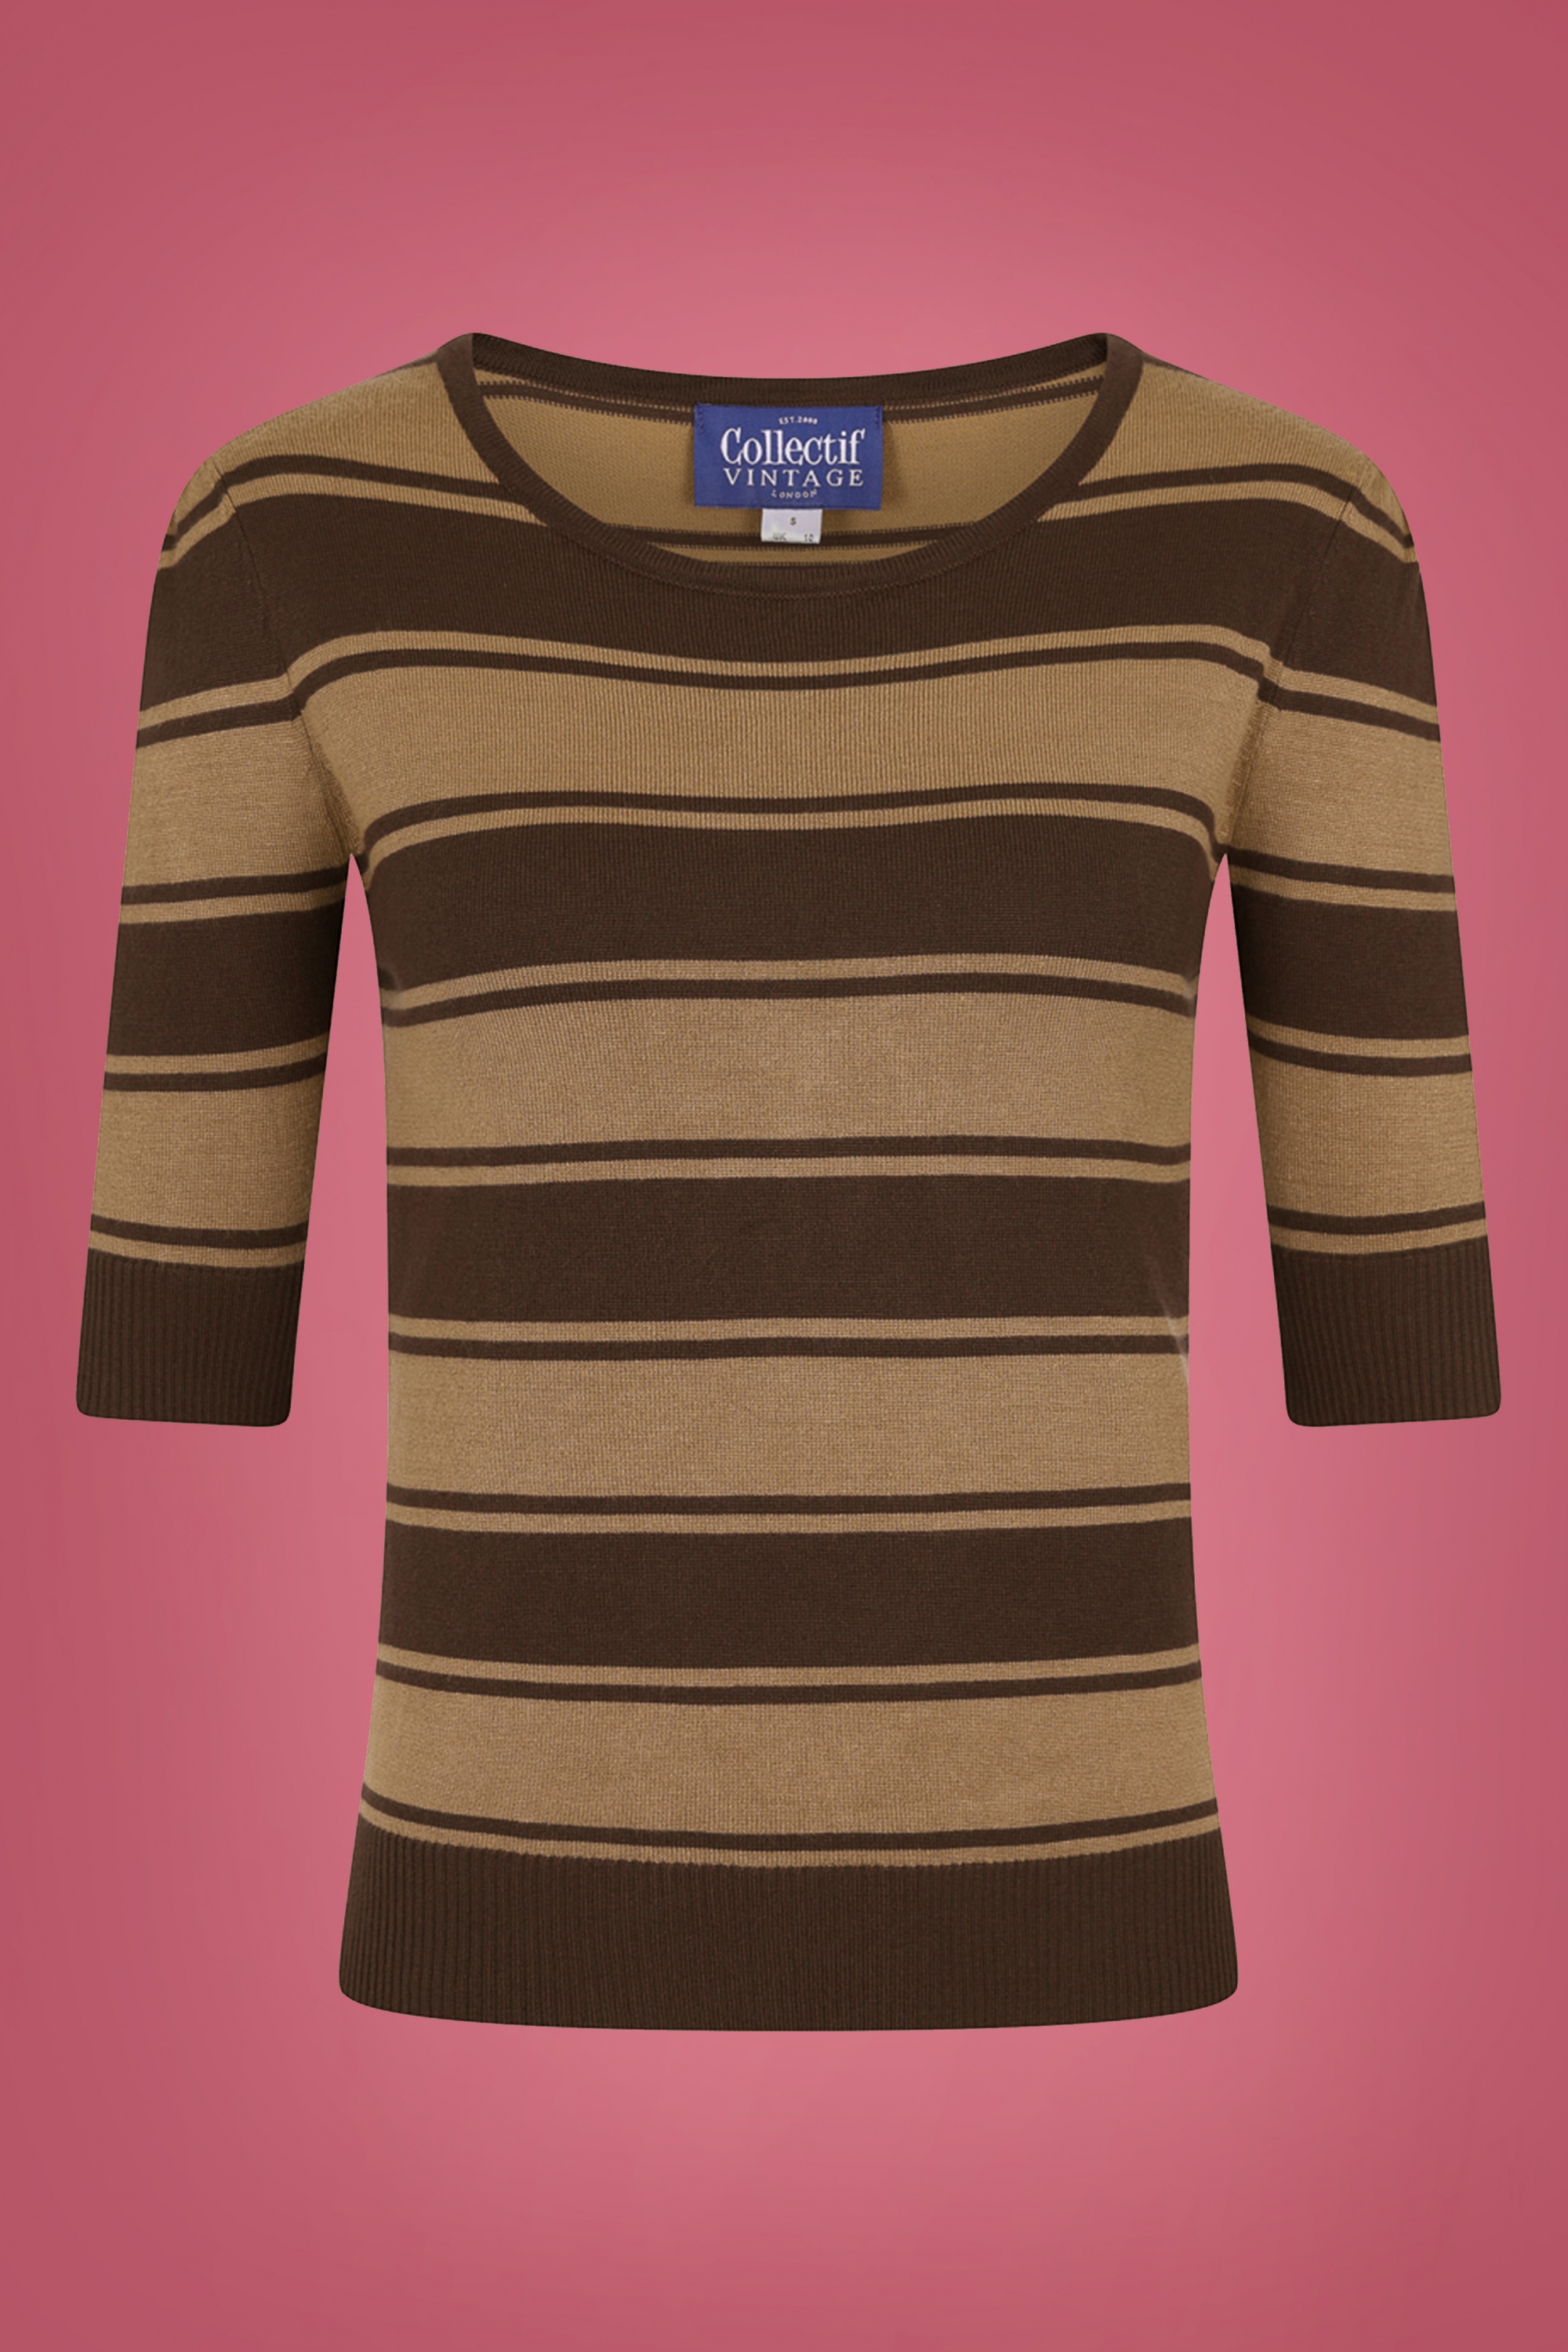 Collectif Clothing - Chrissie Beetle strepen gebreide top in bruin 2